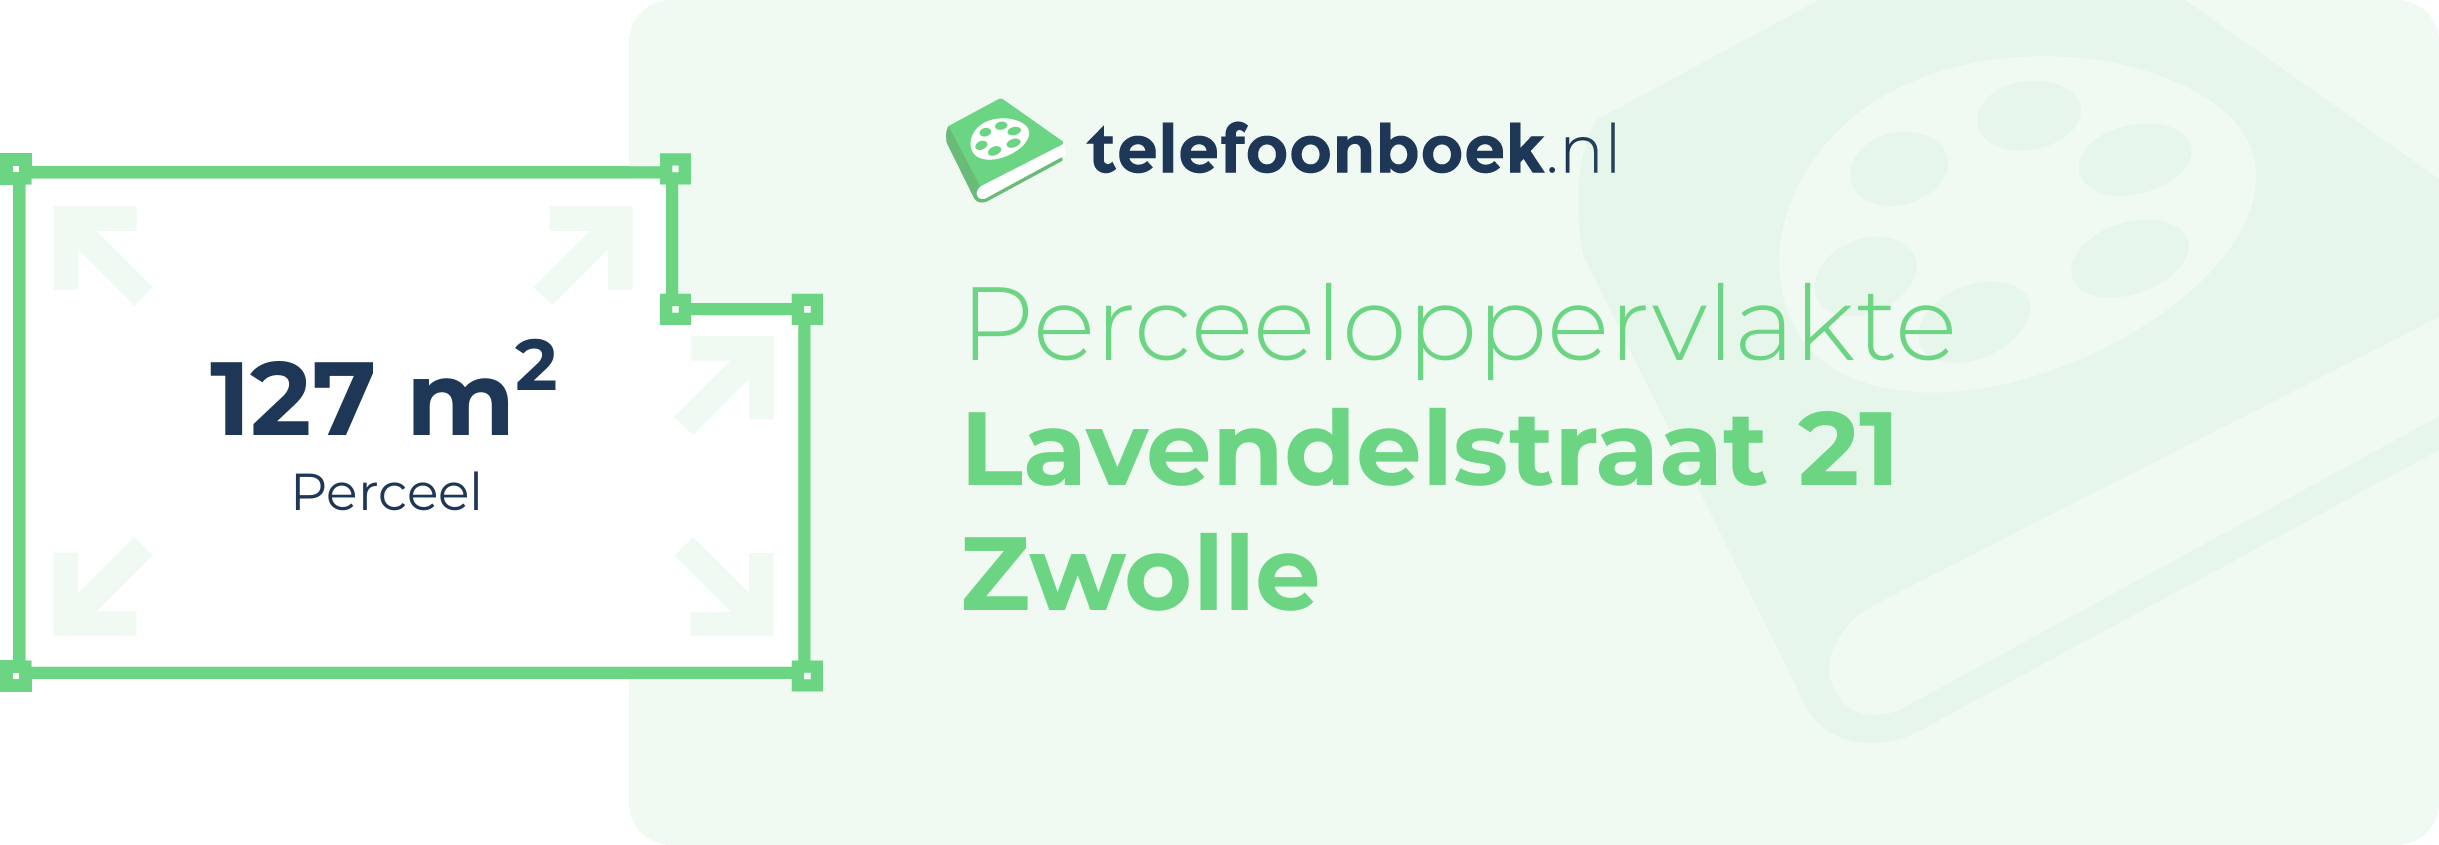 Perceeloppervlakte Lavendelstraat 21 Zwolle